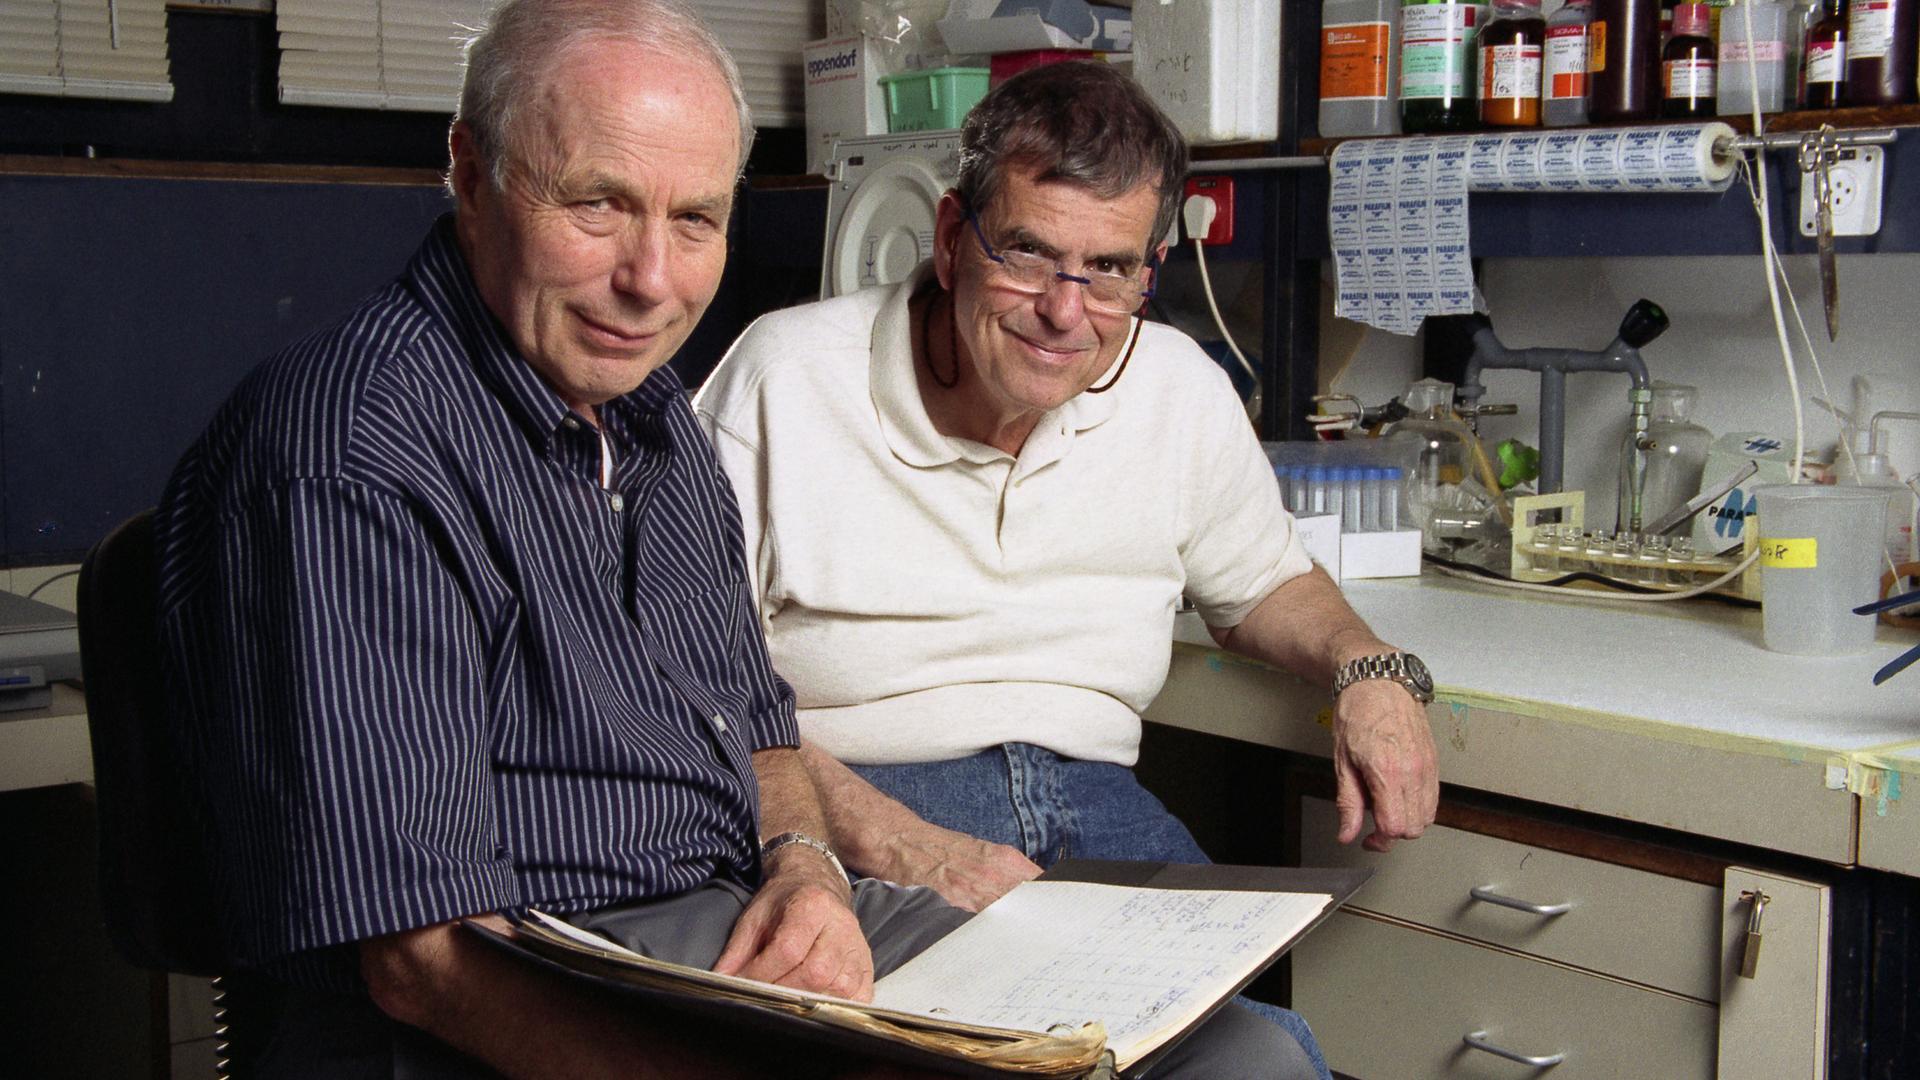 Zwei ältere Männer sitzen nebeneinander in einem Chemielabor und lächeln in die Kamera. Einer von ihnen hält ein aufgeschlagenes Notizbuch auf dem Schoß.